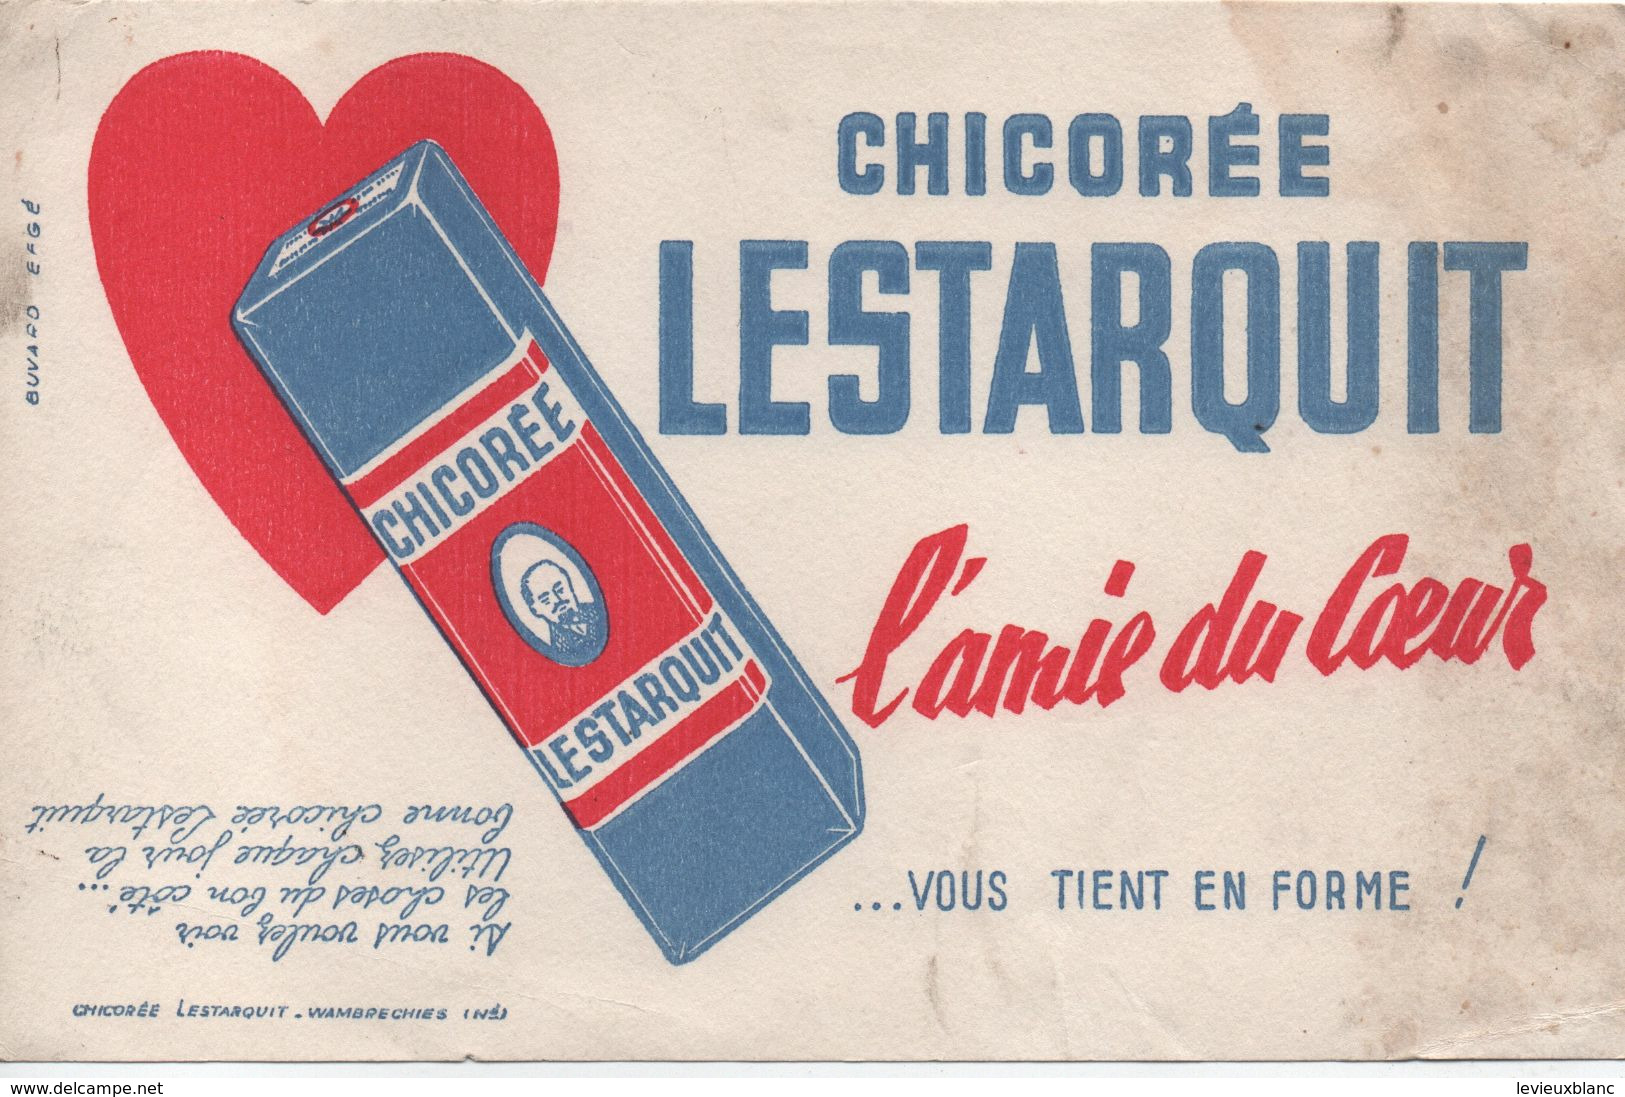 Buvard Publicitaire Ancien/Chicorée/Chicorée LESTARQUIT/L'Amie Du Coeur /WAMBRECHIES/Vers 1950-60               BUV497 - Coffee & Tea